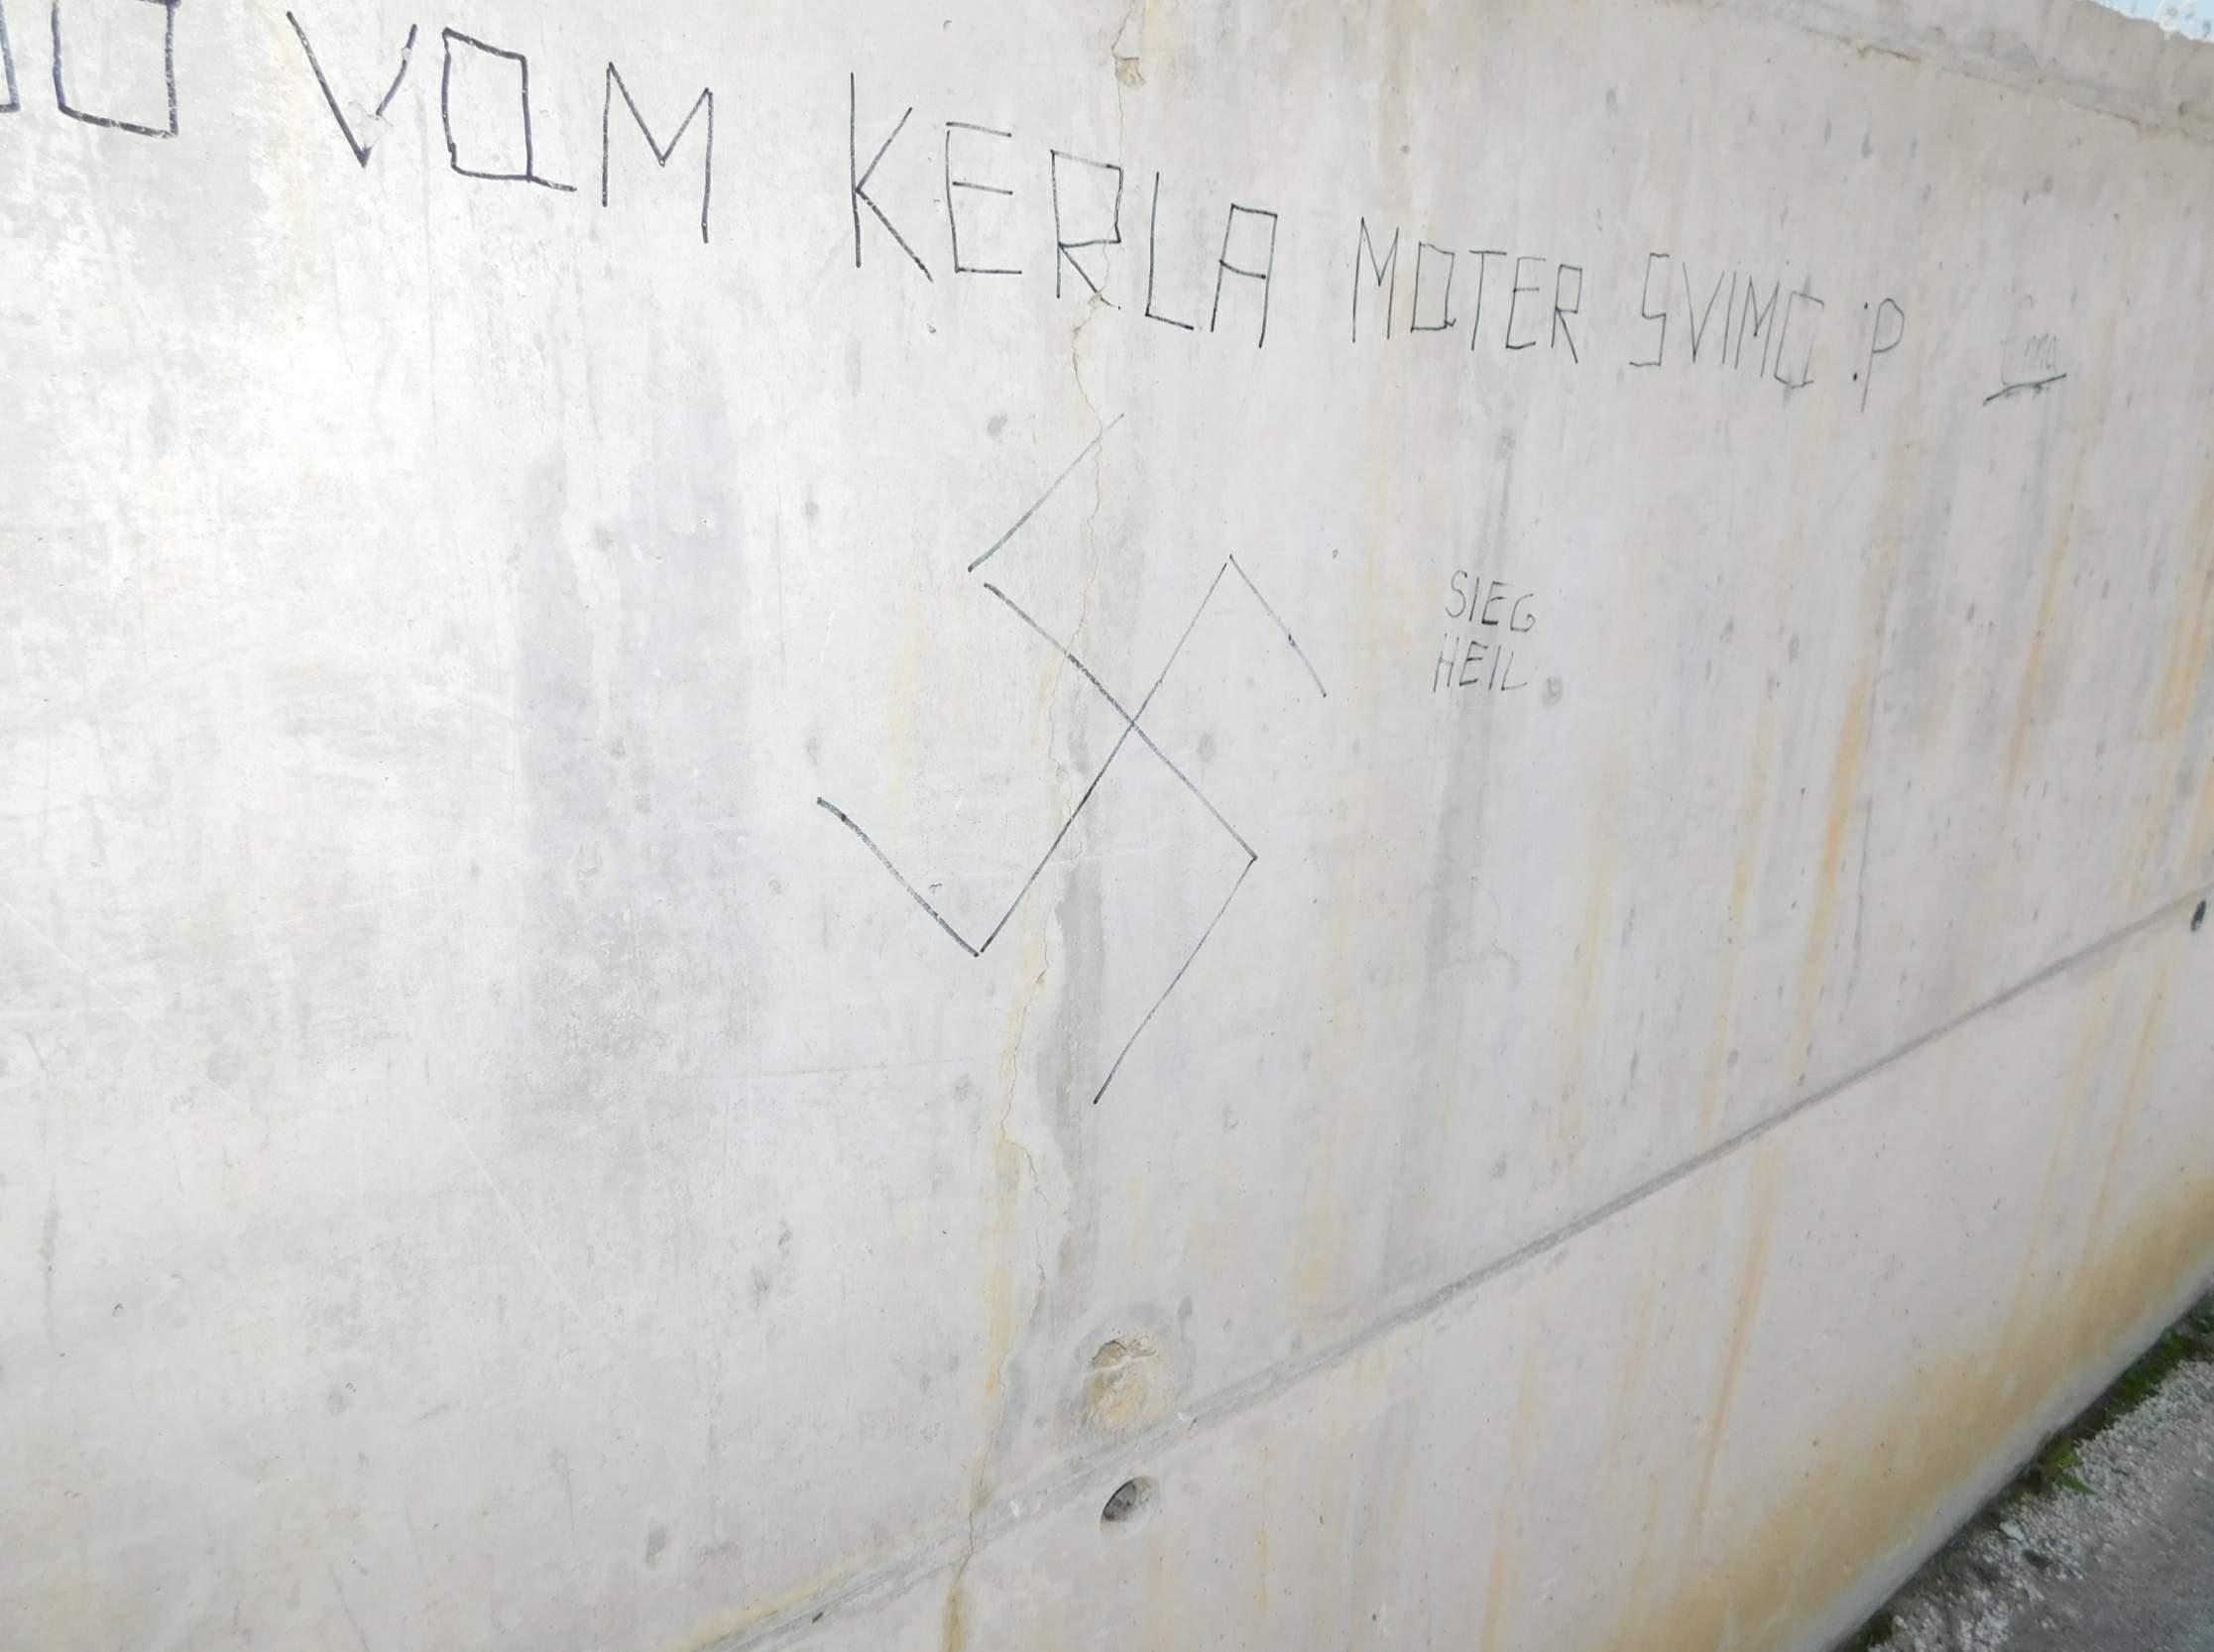 Fašistički simboli opet osvanuli u Svrakama